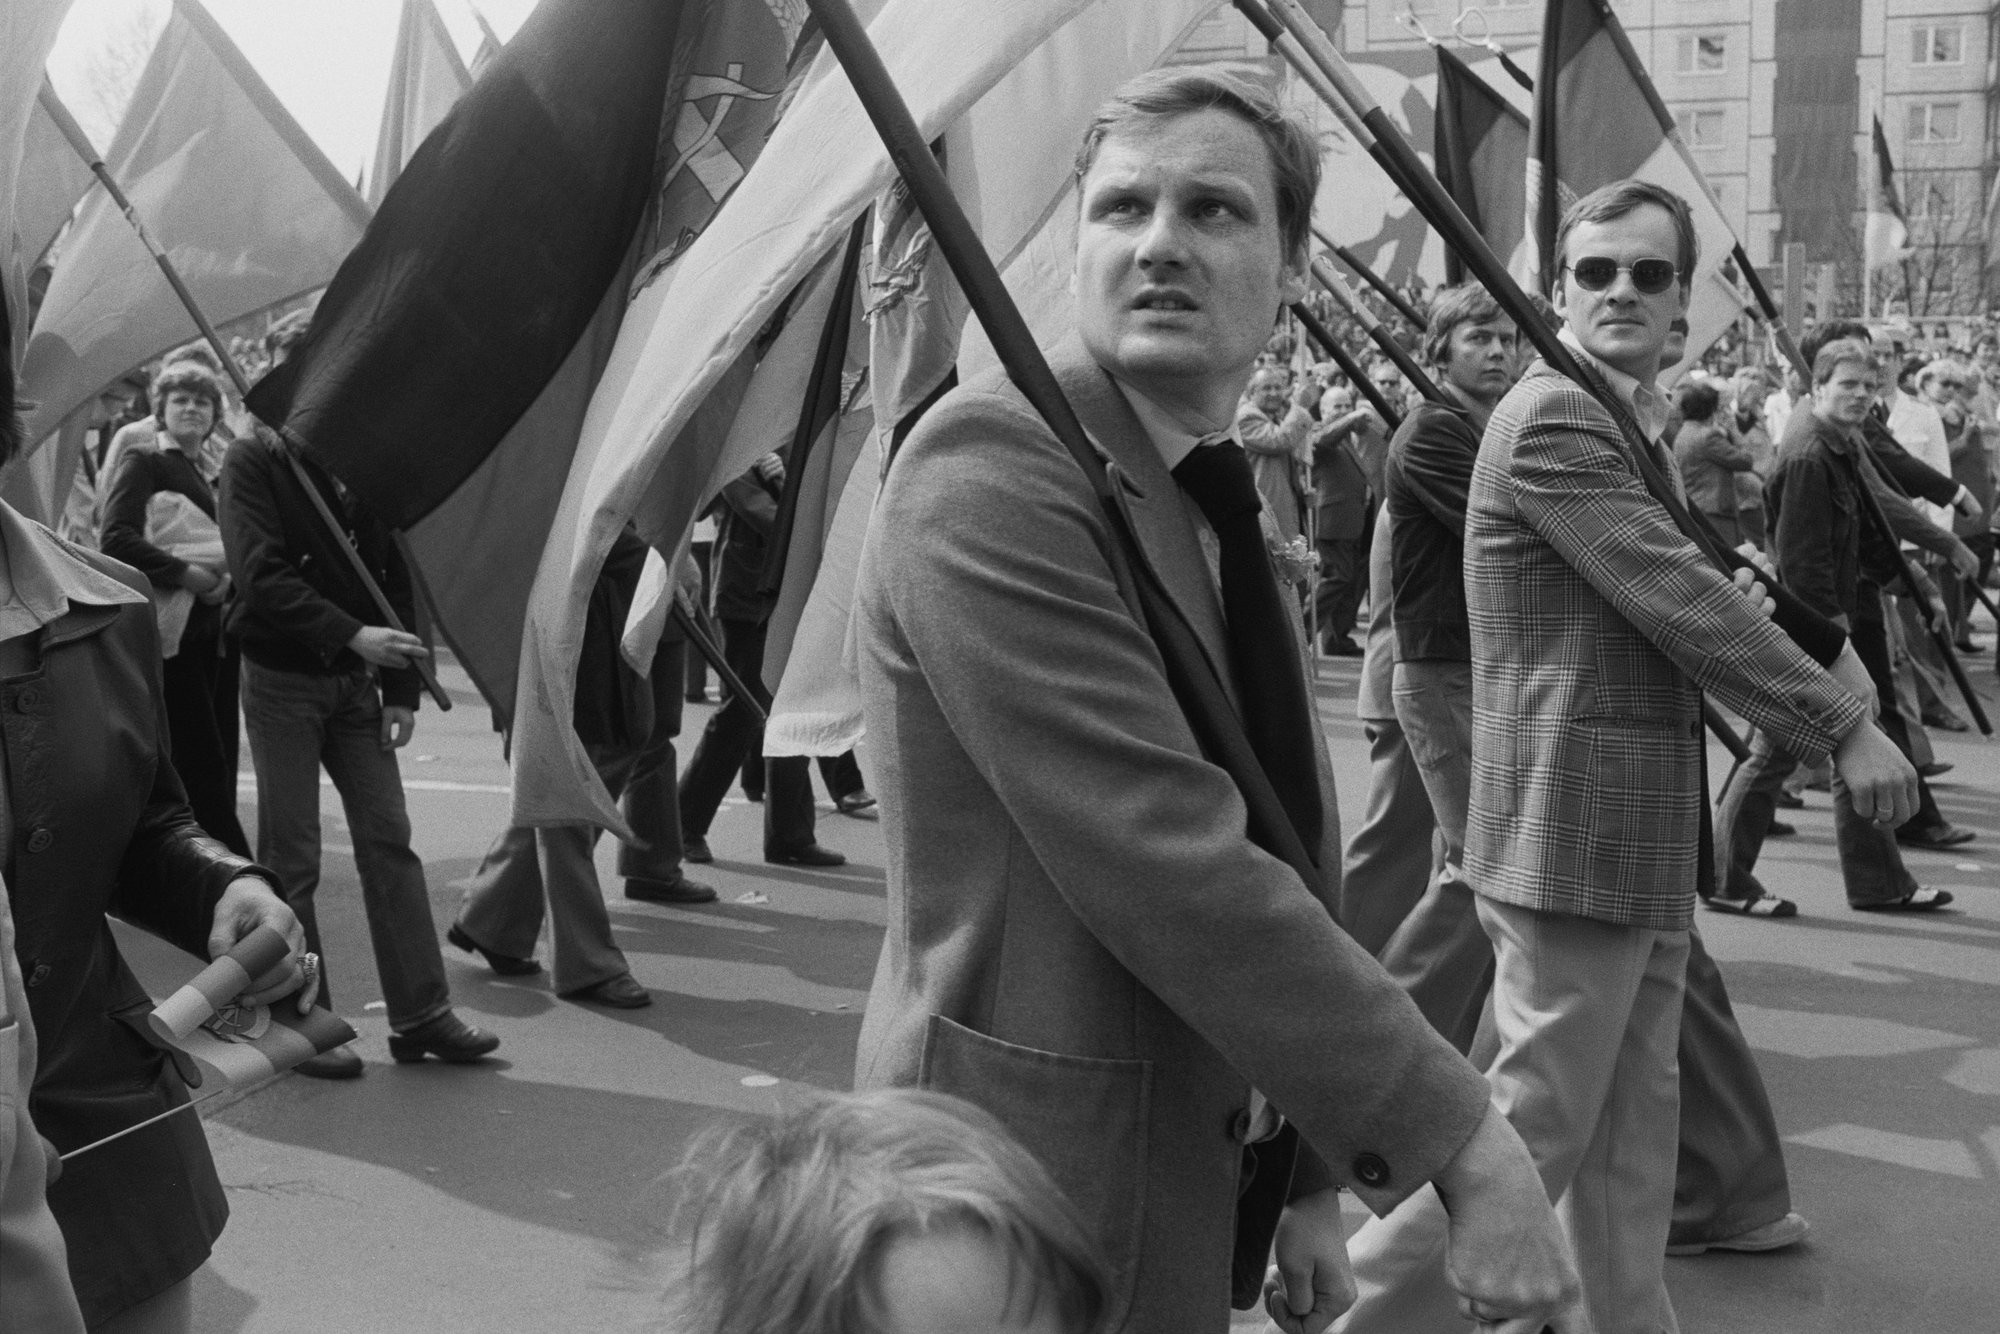 Участники парада 1 мая 1980 года в Берлине, ГДР. Фотограф Уте Малер